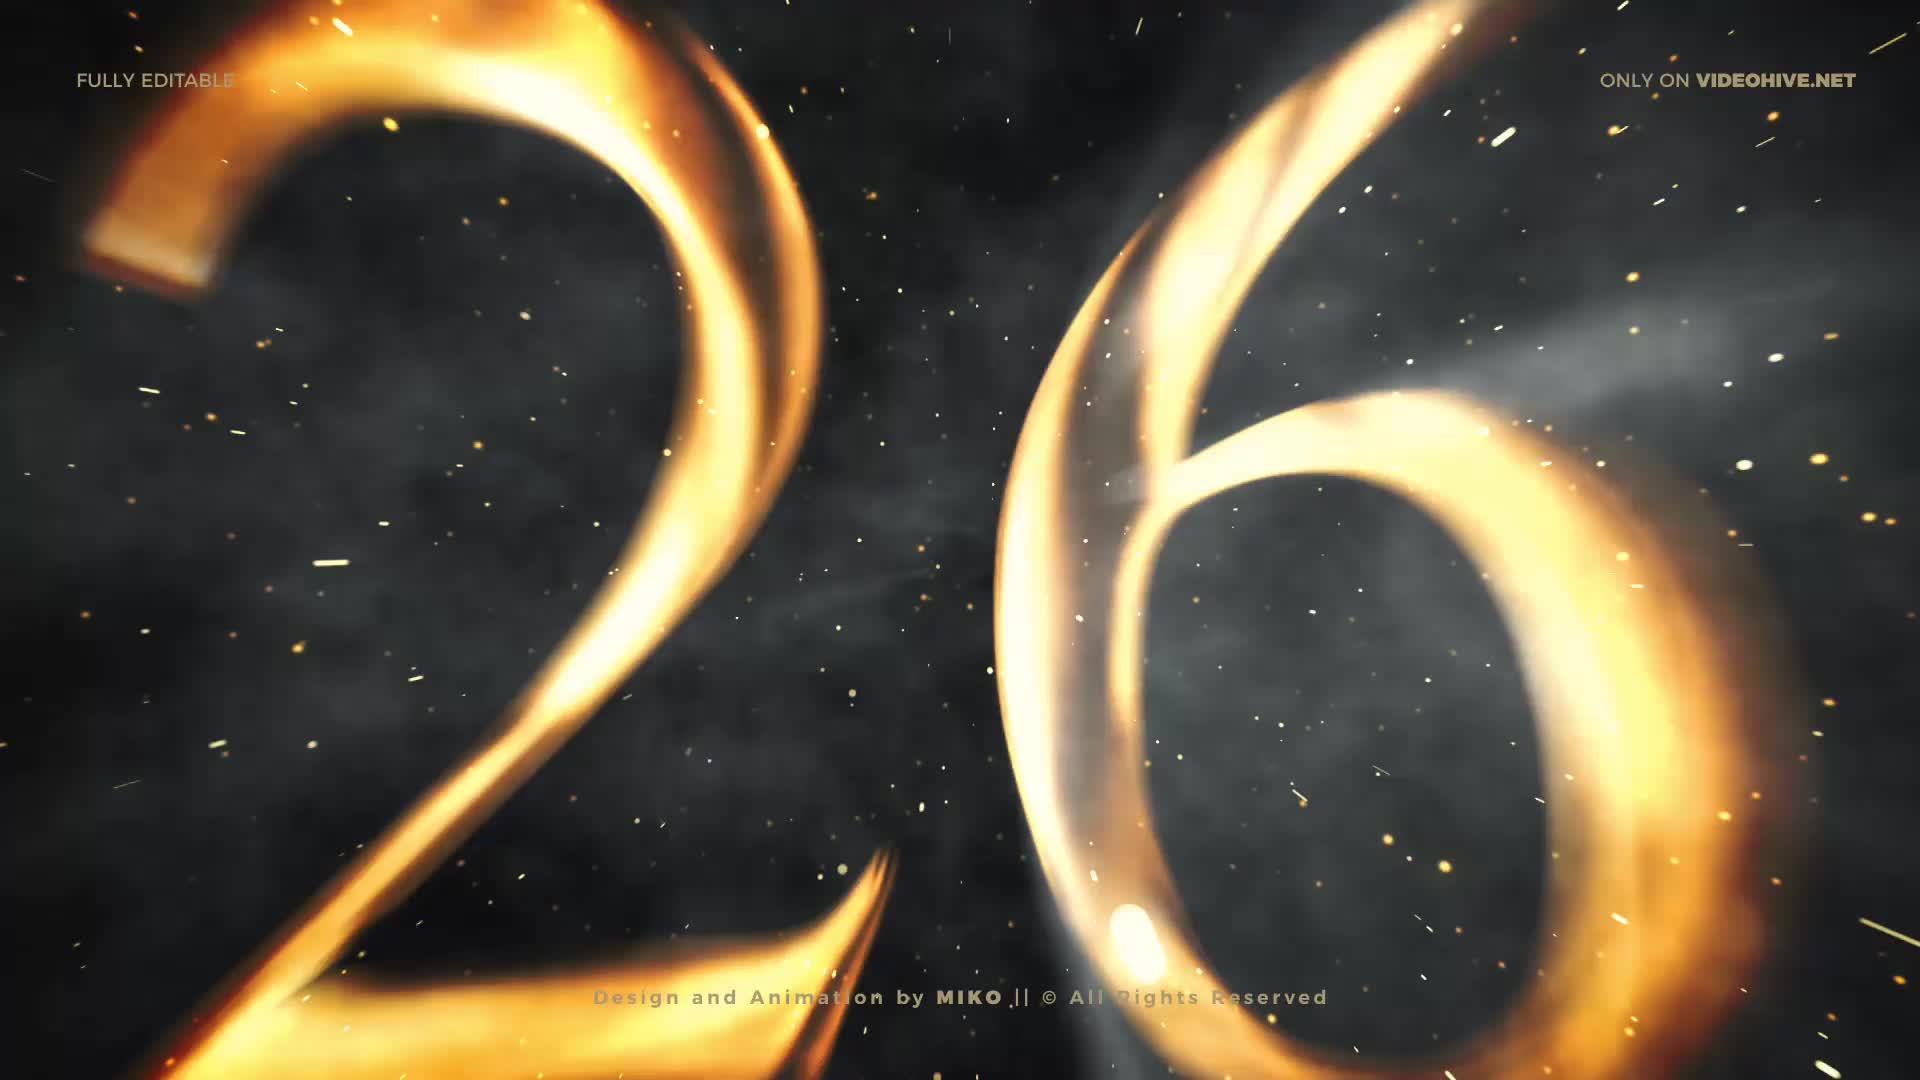  New Year Countdown 2021 